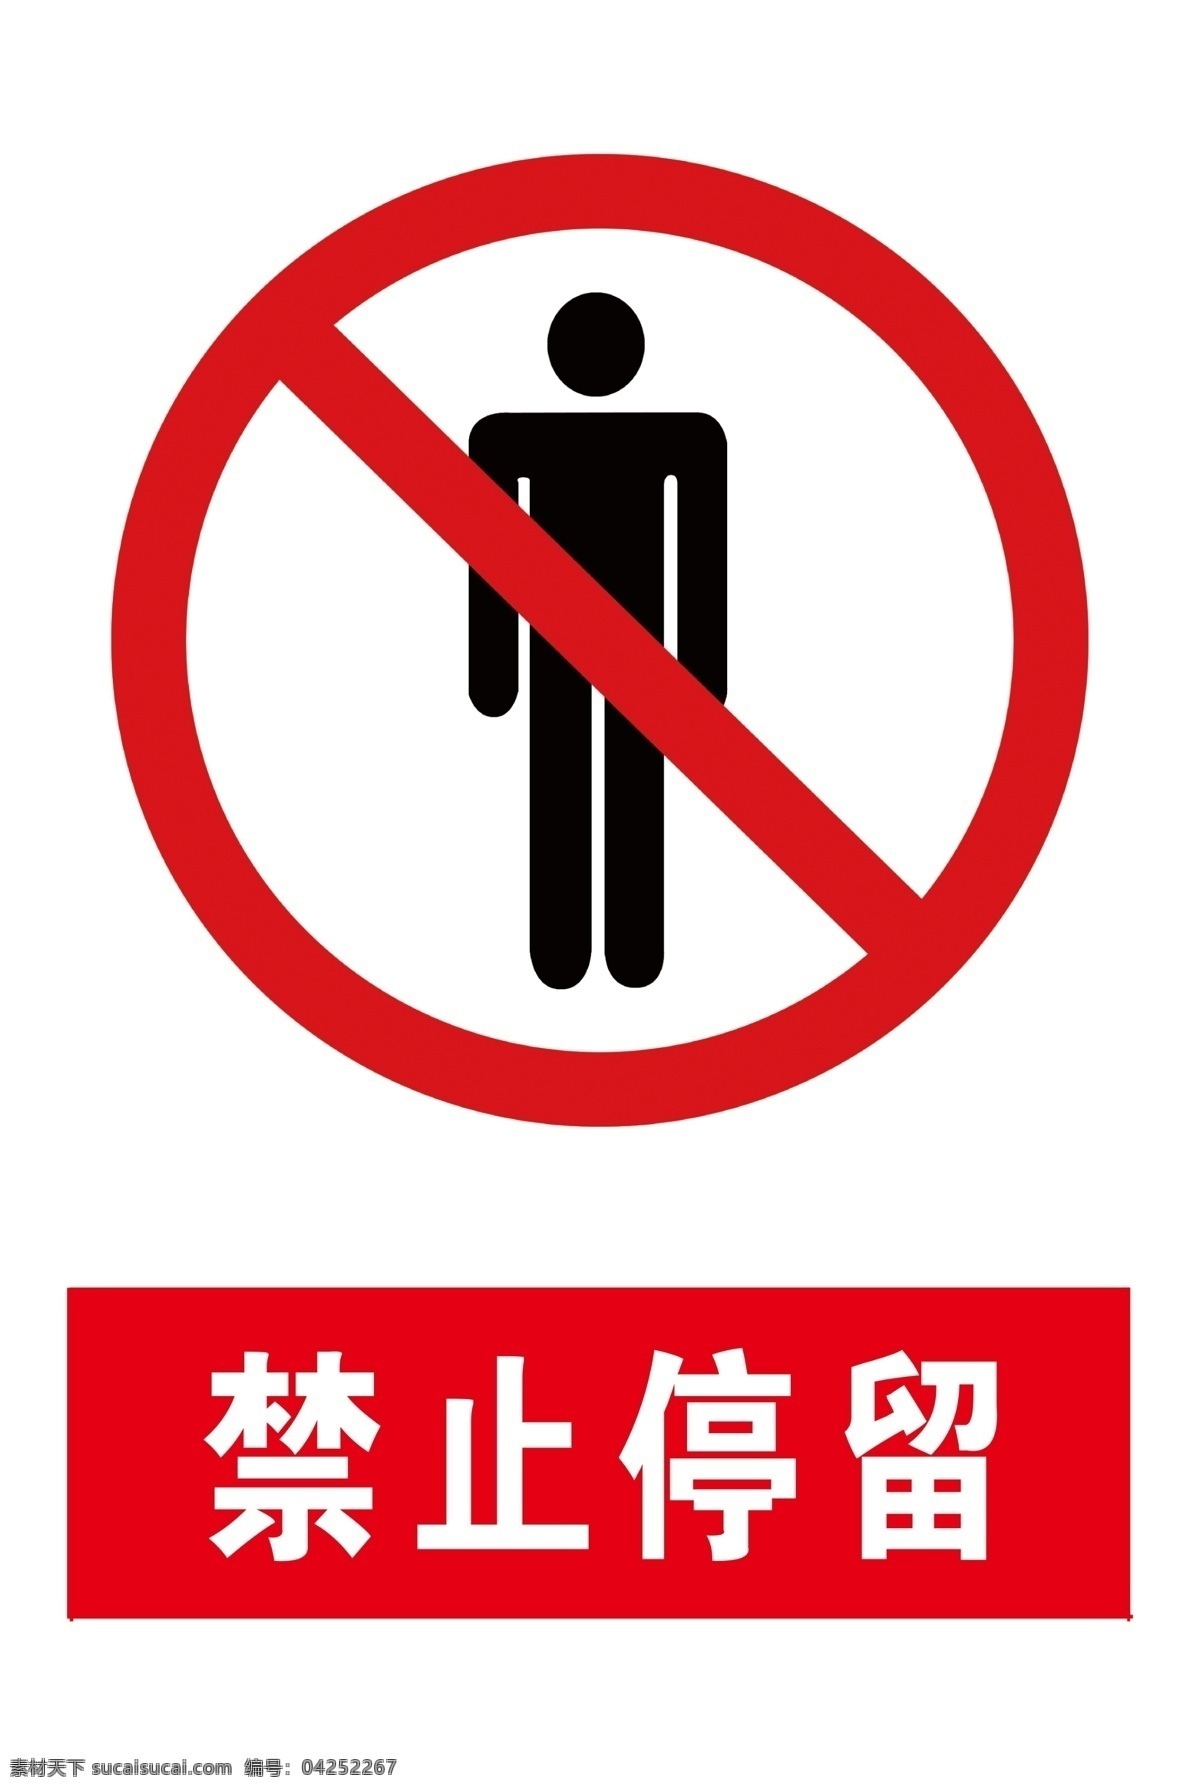 禁止停留图片 安全标识 警示标识 禁止停留 安全 警示 禁止 红色标识 标志图标 公共标识标志